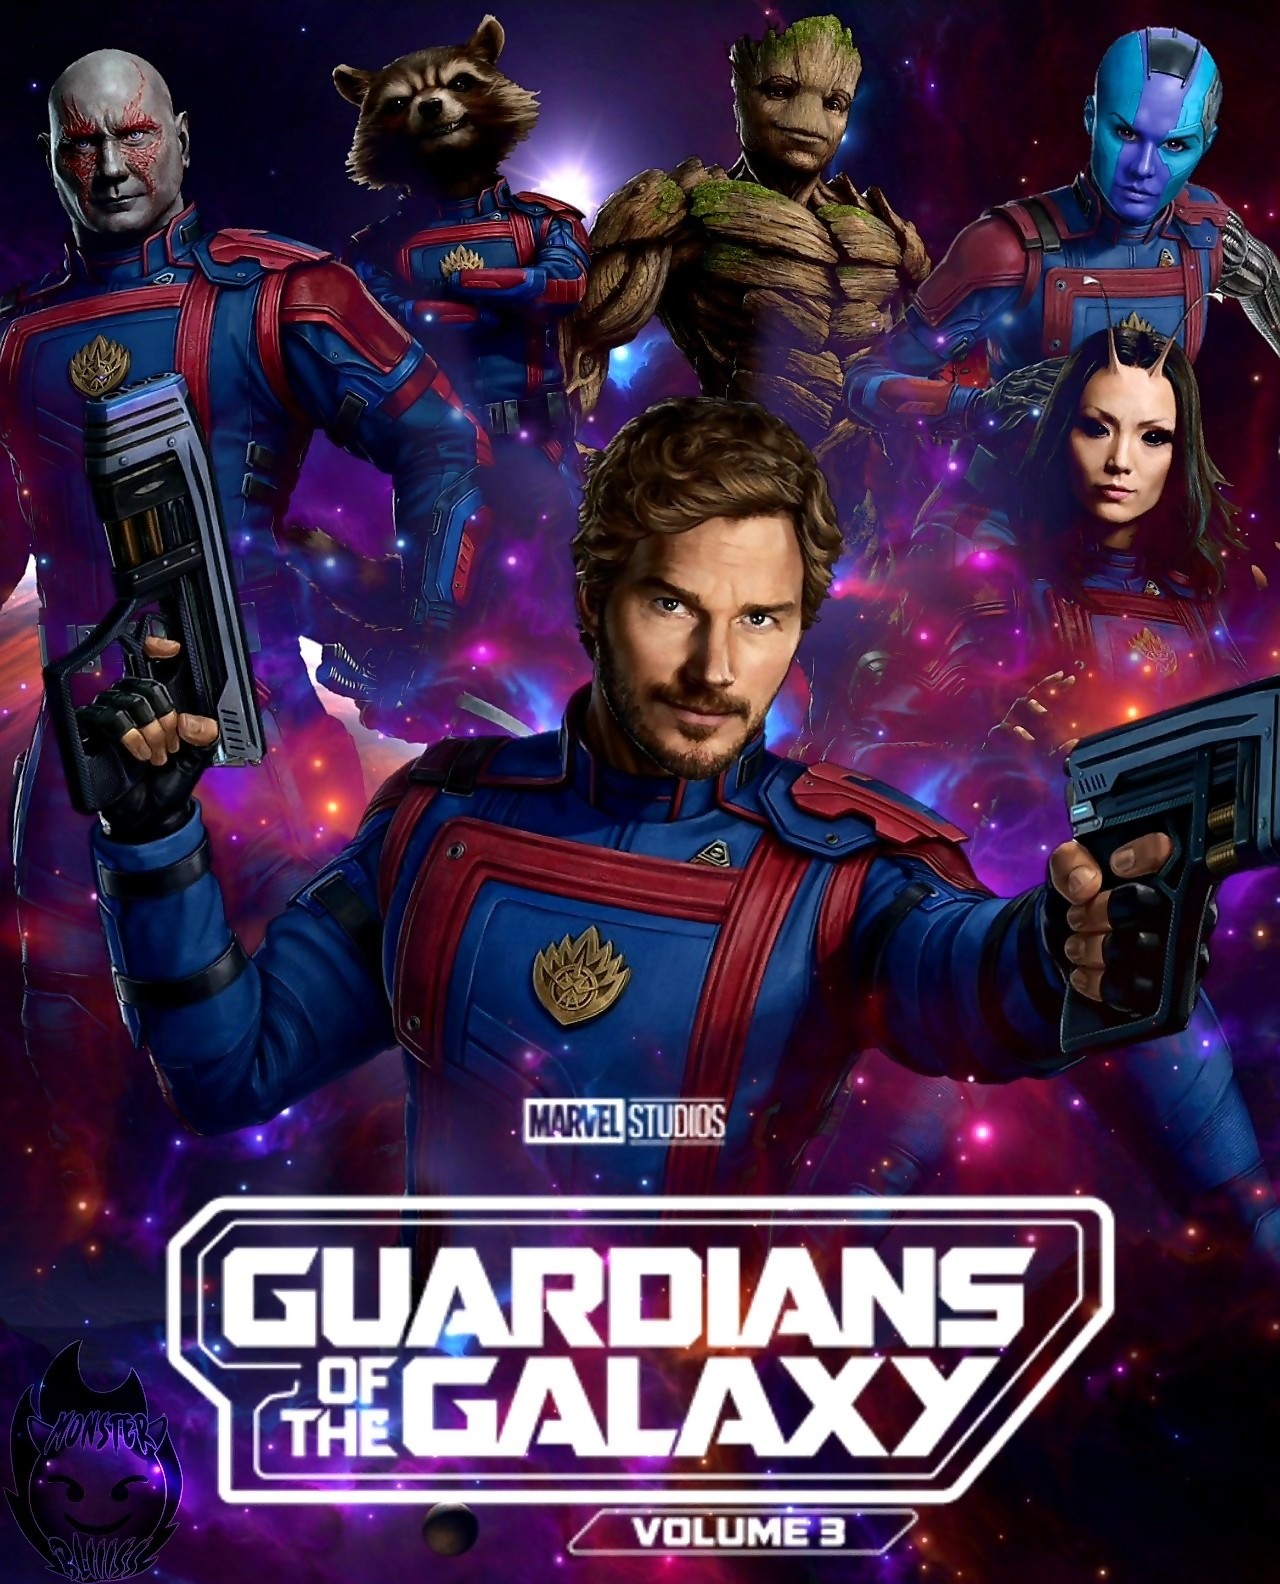 Les Gardiens de la Galaxie Volume 3 - Critique du Film Marvel